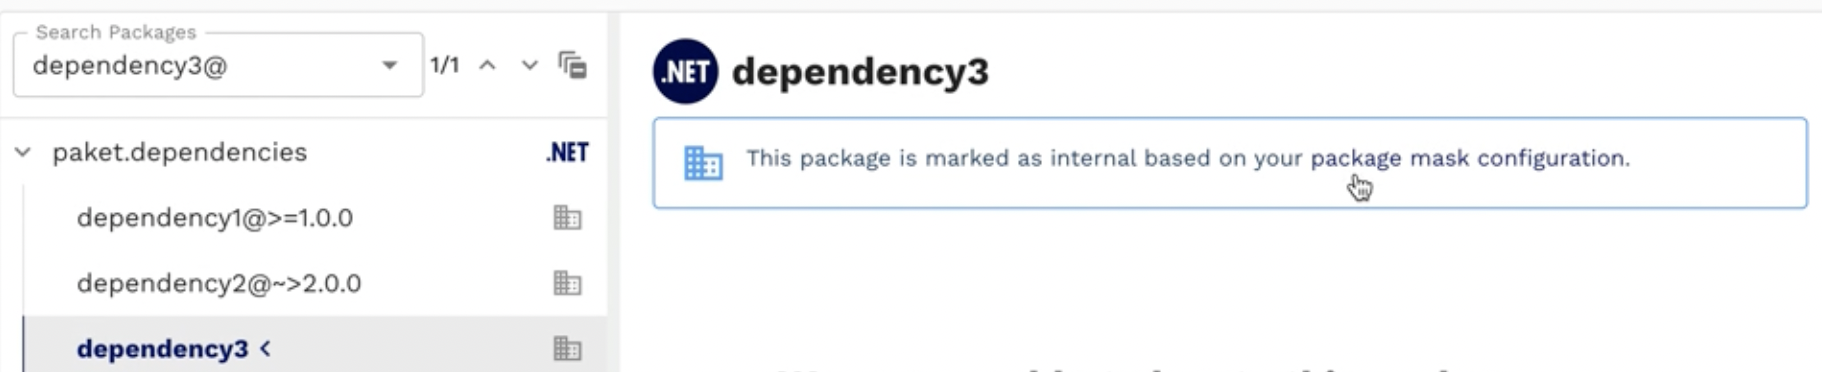 Internal package notification shown in SOOS dependency tree